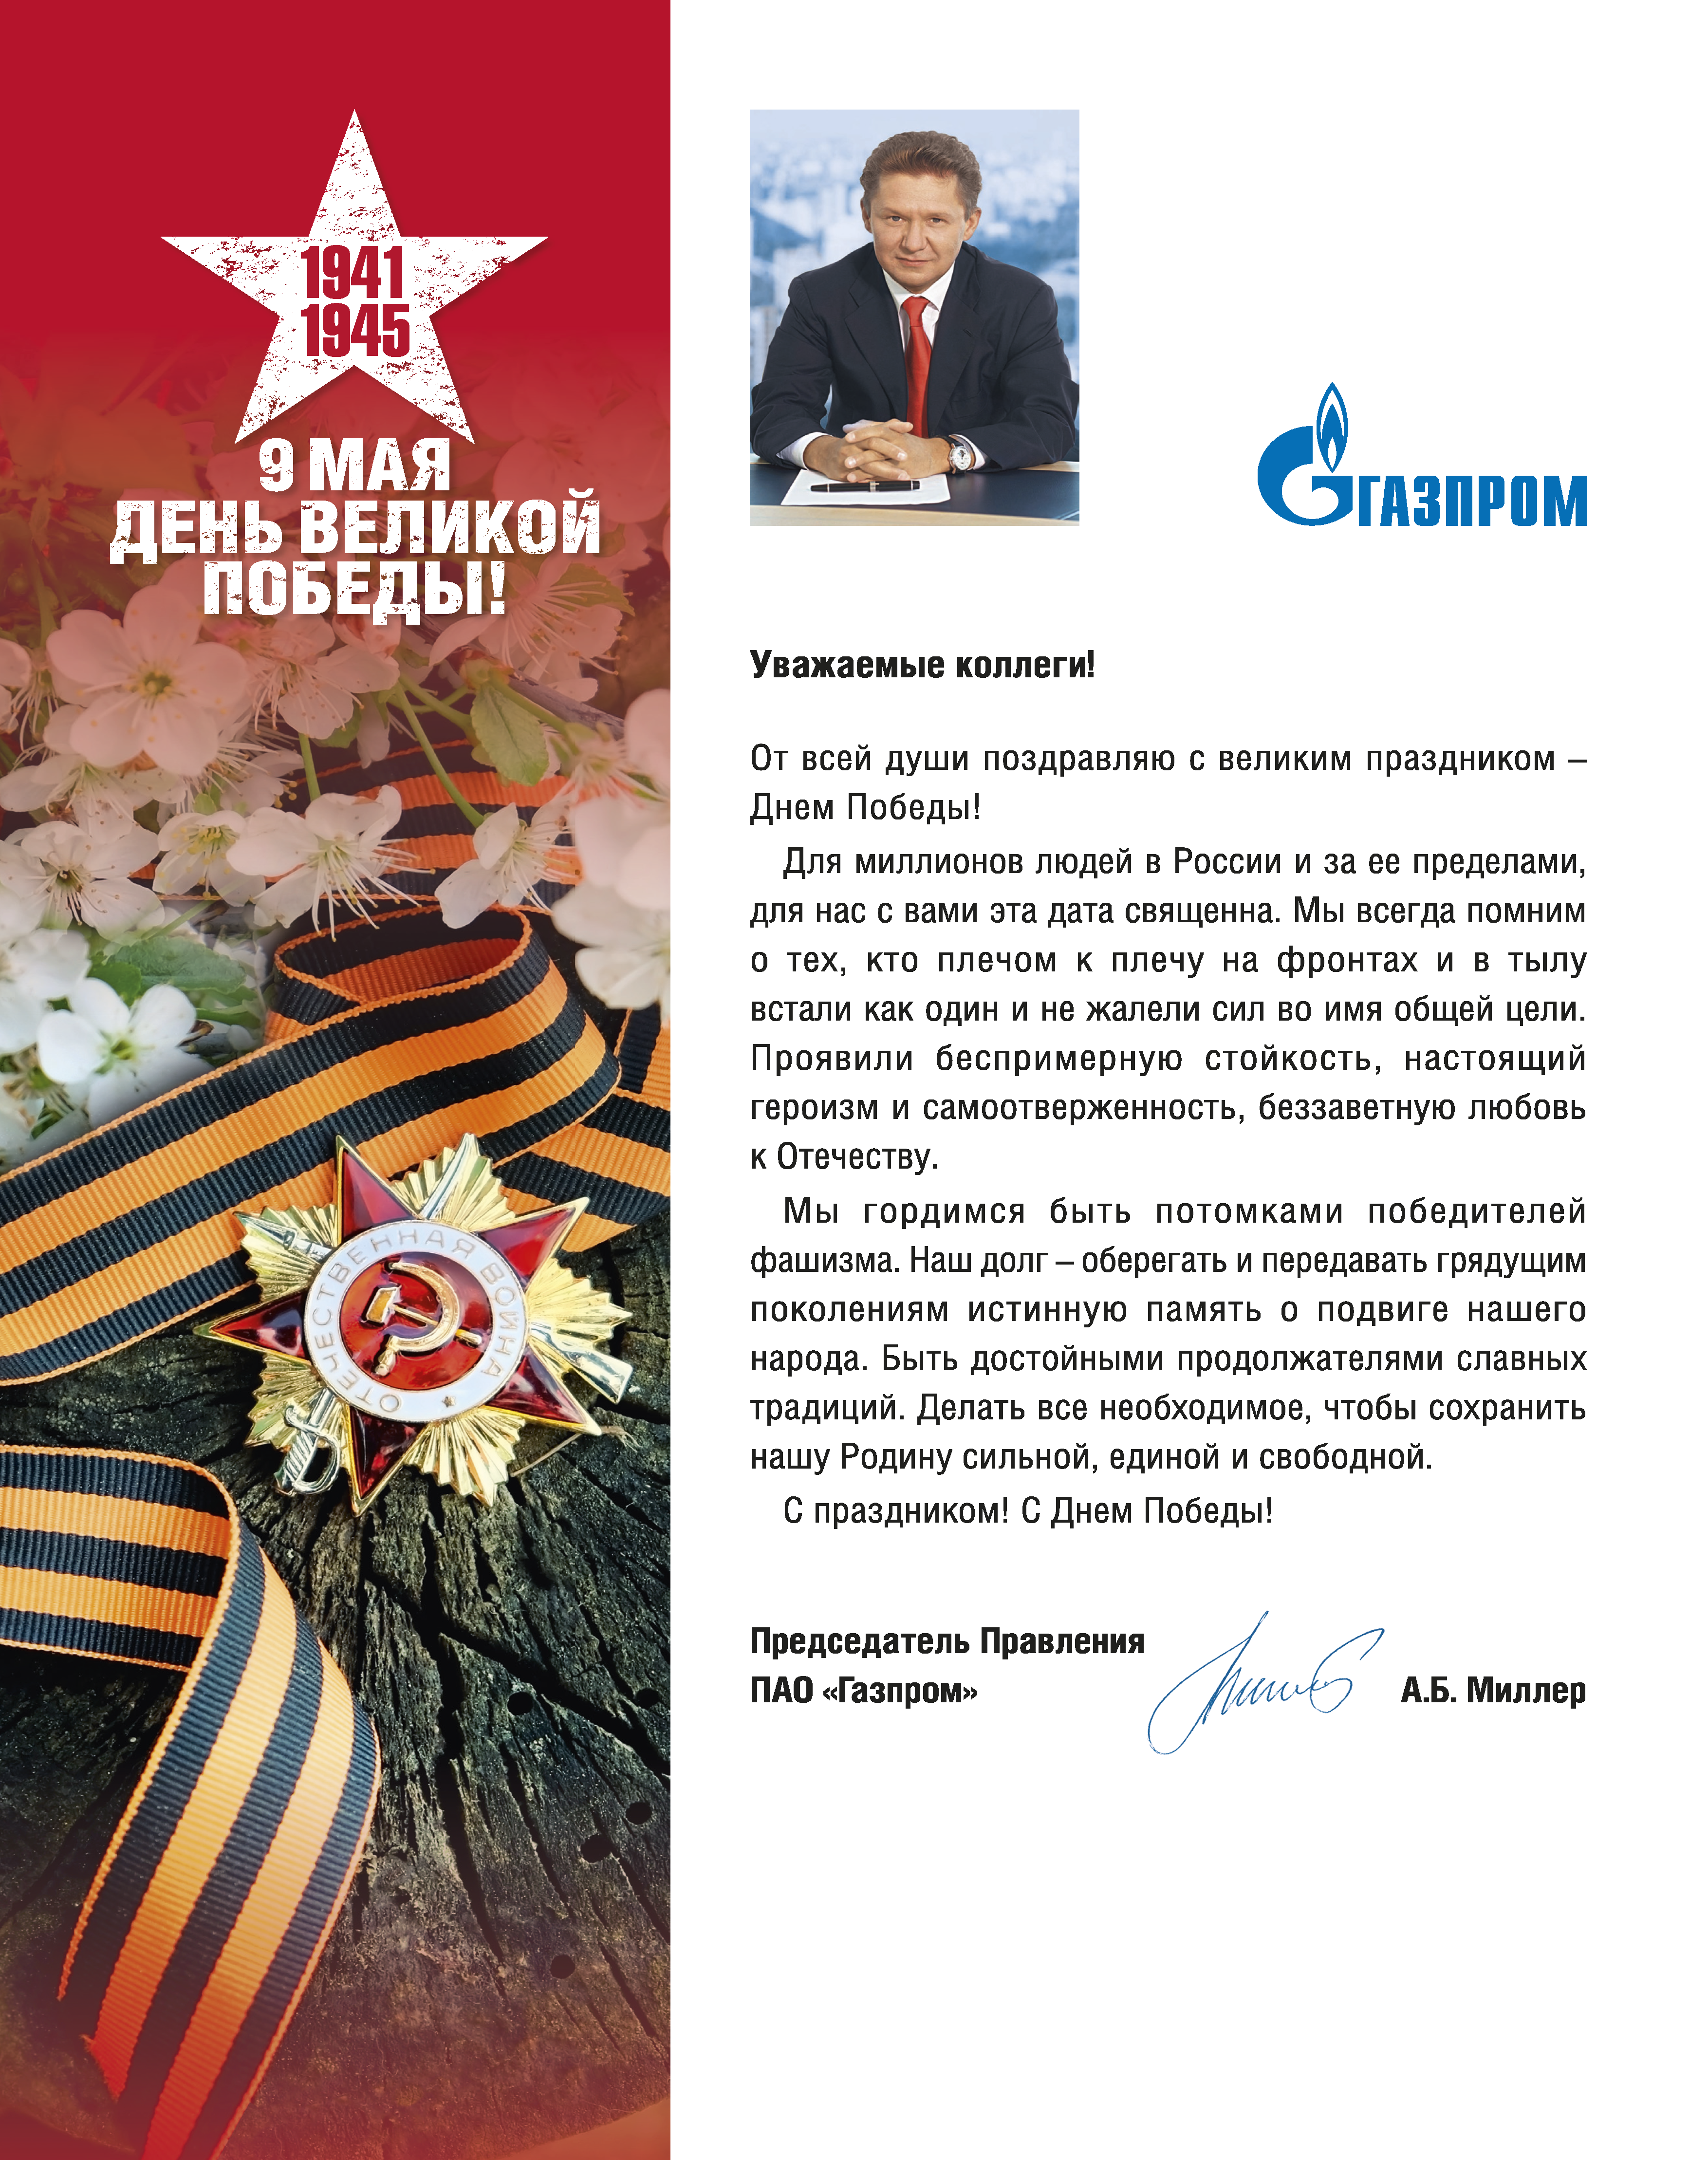 Поздравление с Днем Победы Председателя правления ПАО "Газпром" А.Б. Миллера